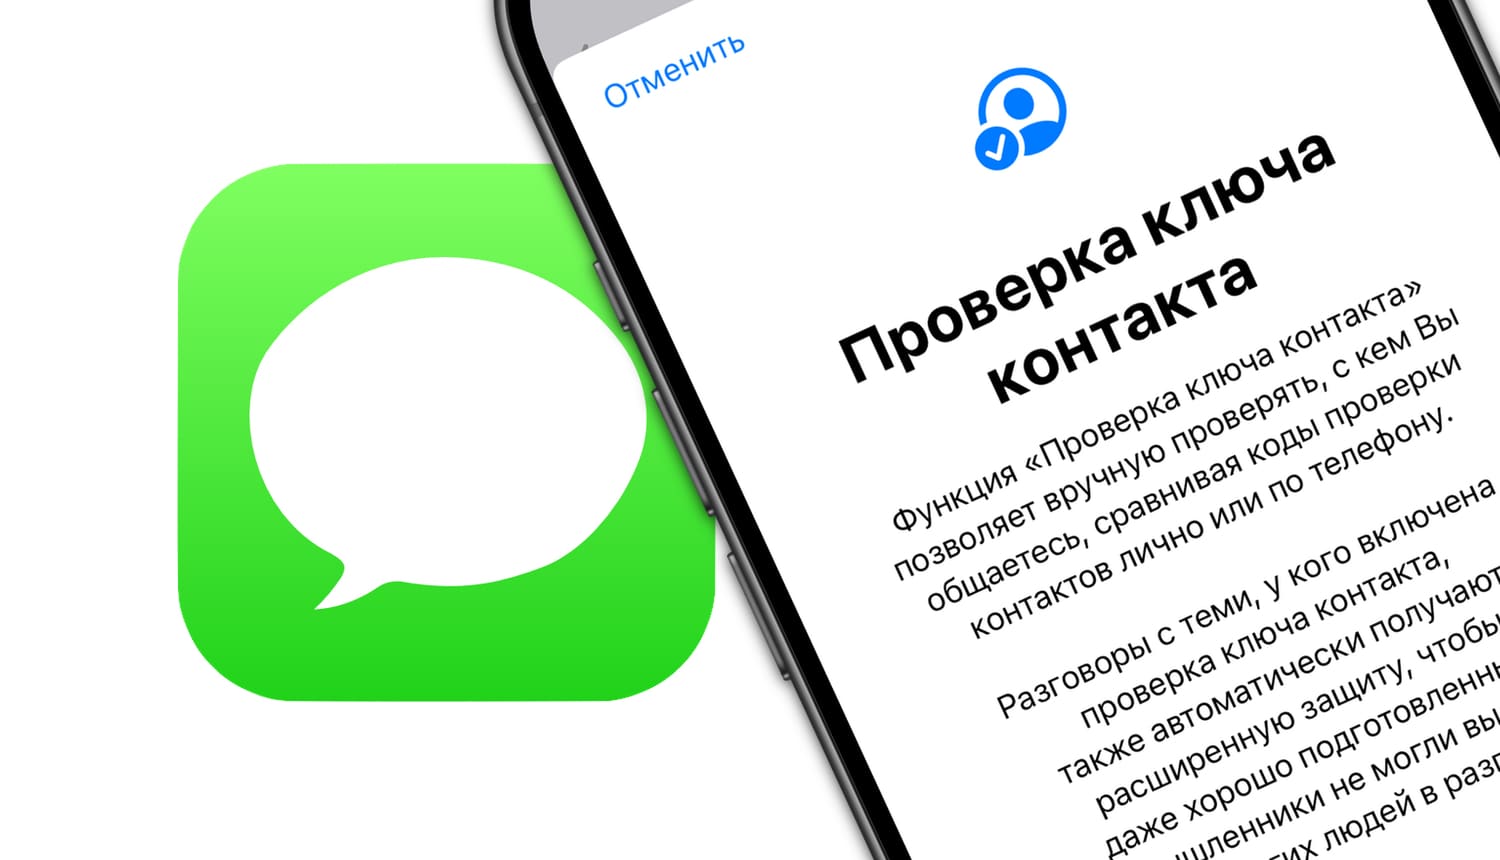 Проверка ключа контакта на Айфоне в iMessage: что это и как пользоваться